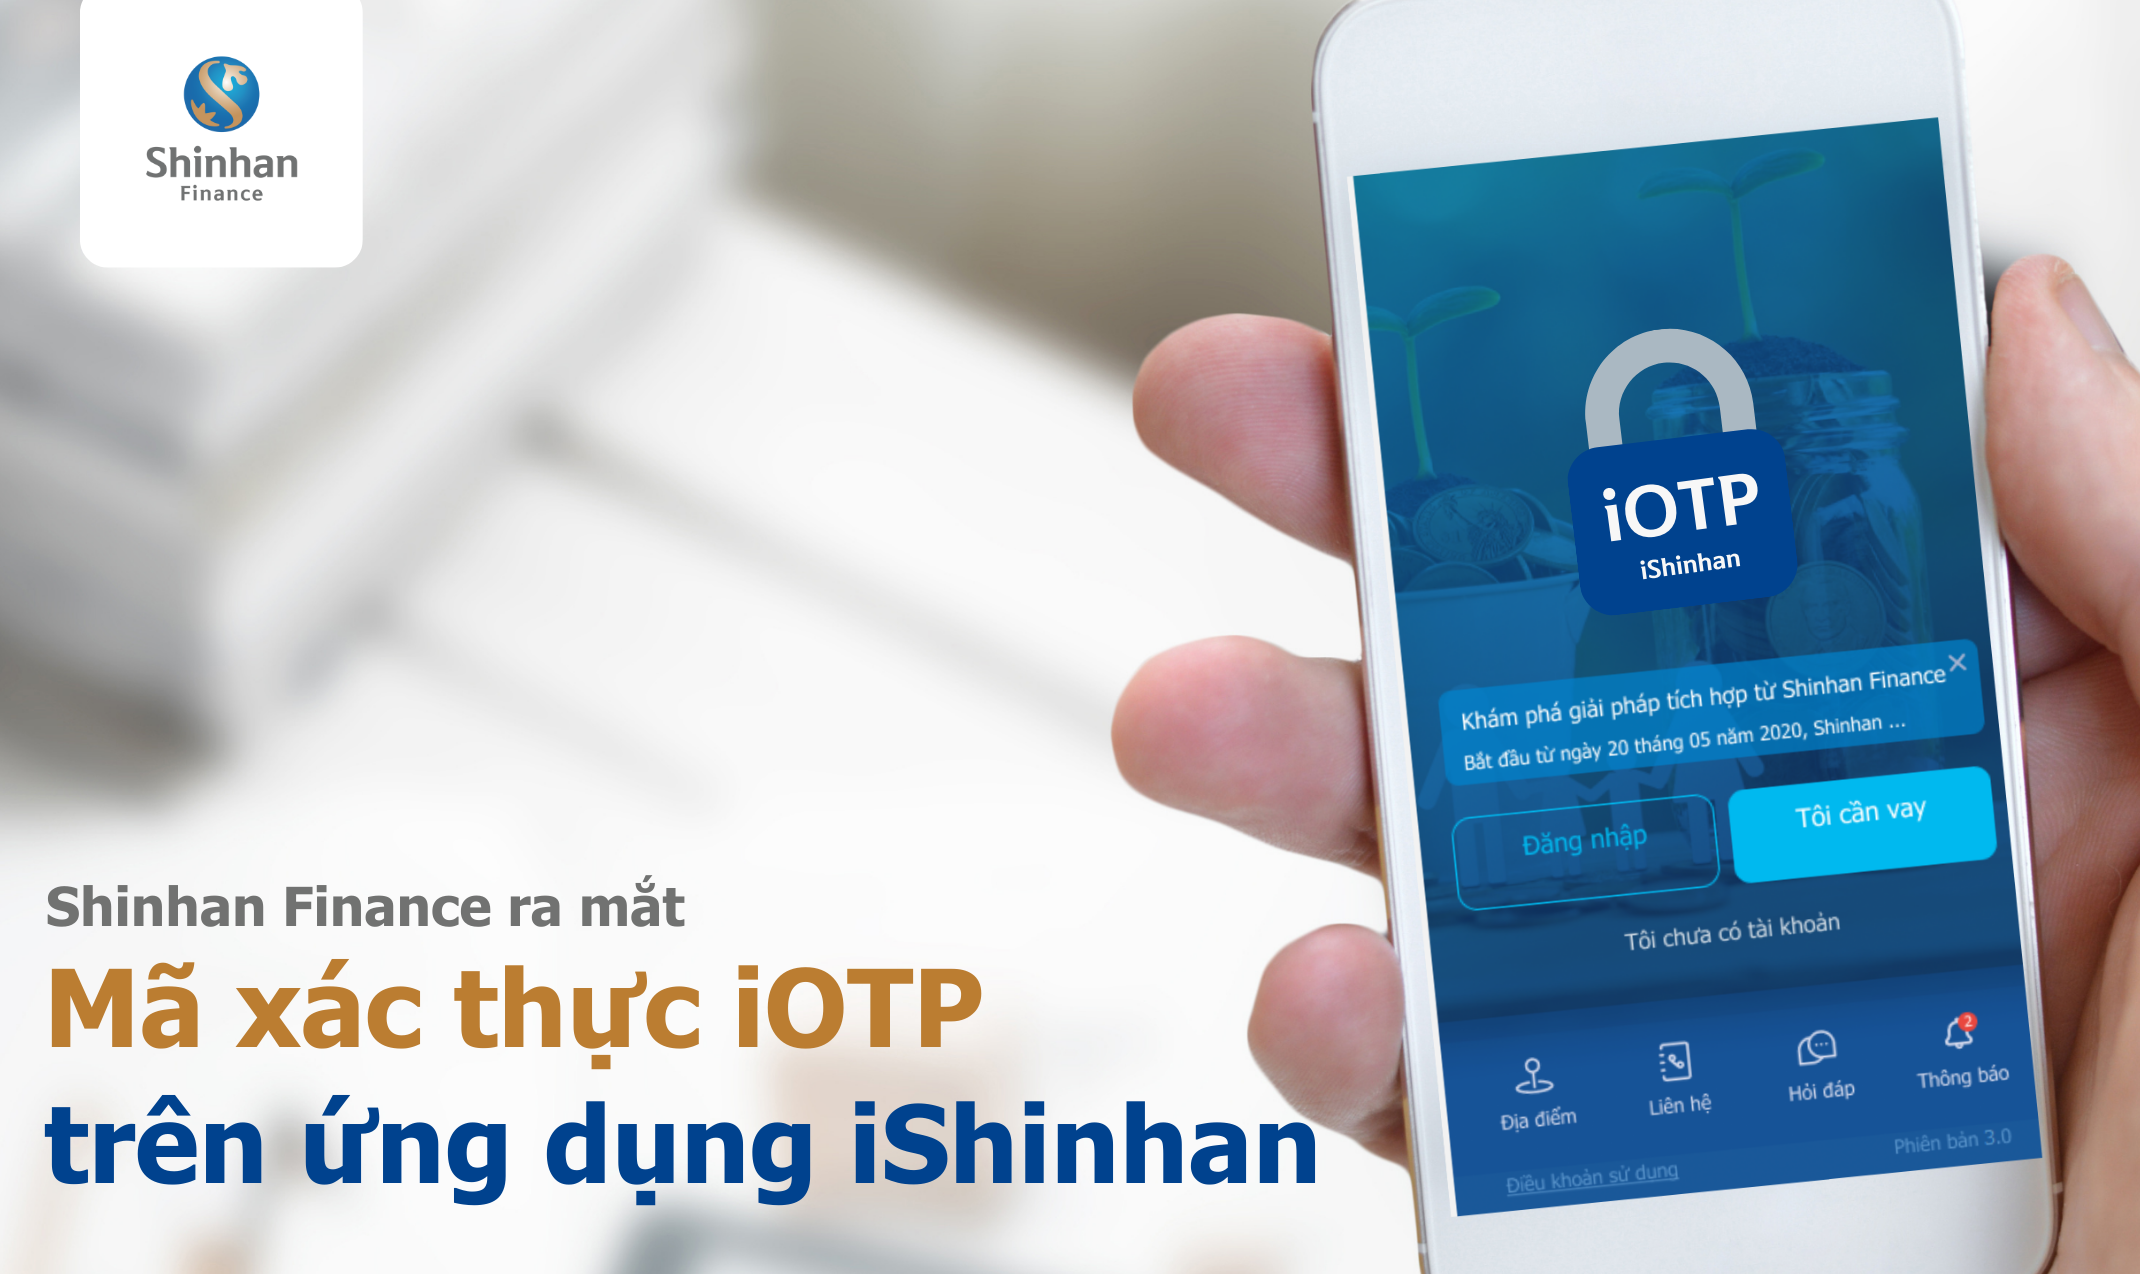 Mã OTP là gì và tại sao mã OTP được sử dụng trong iOTP?
